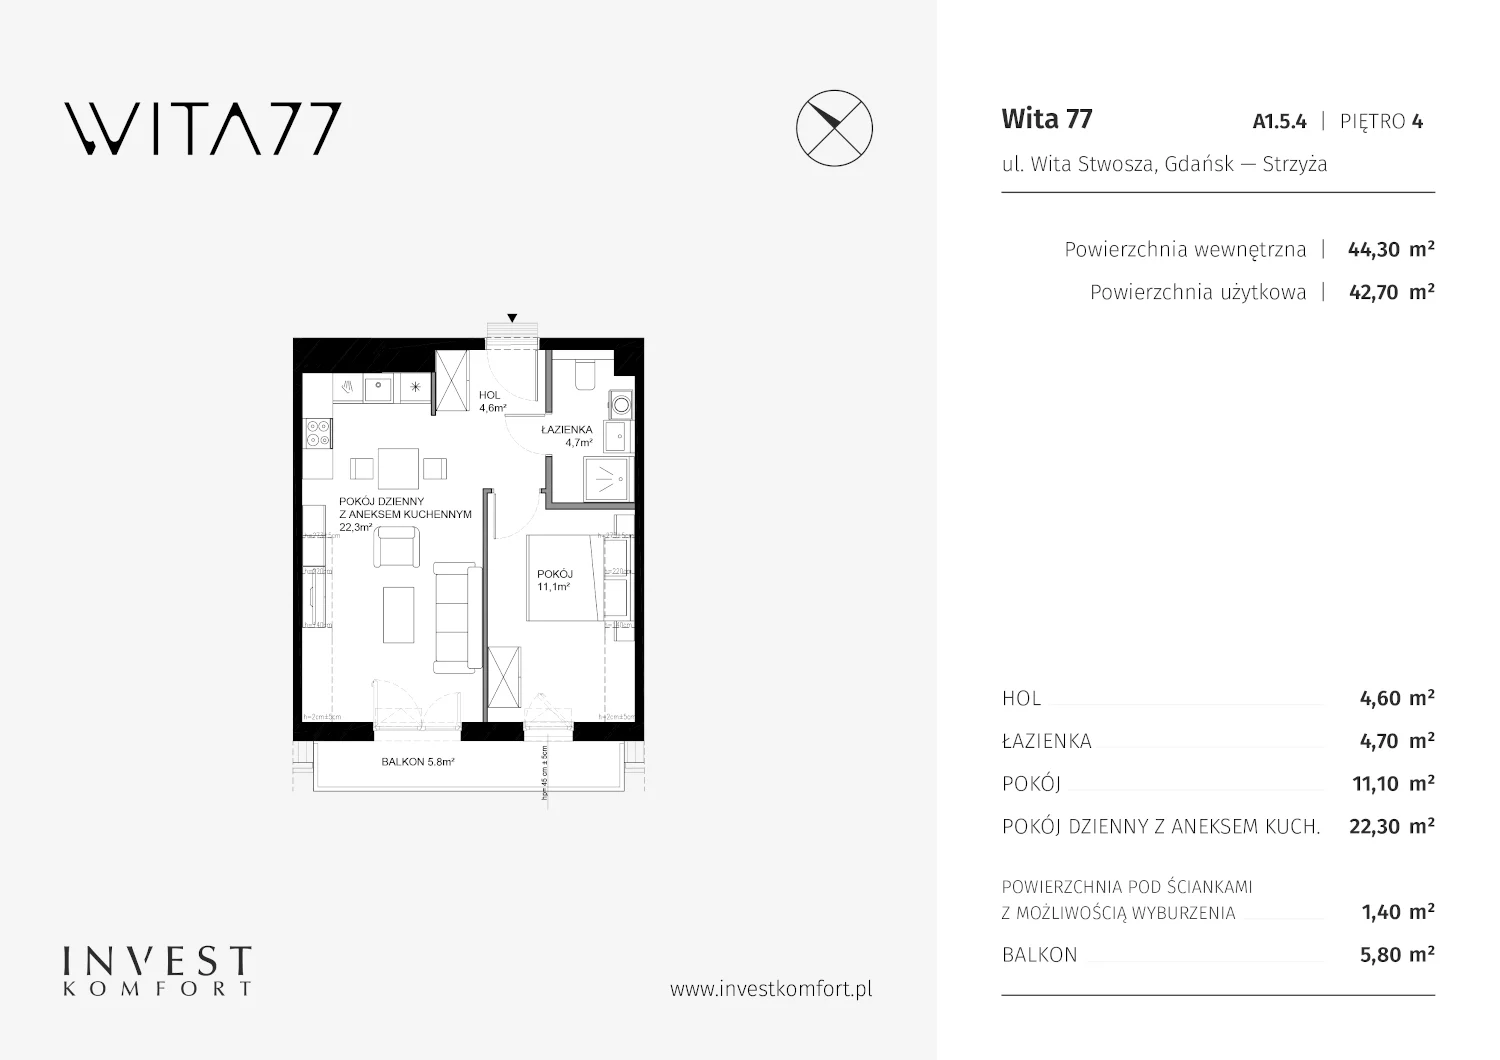 Apartament 44,30 m², piętro 4, oferta nr A1.5.4, Wita 77, Gdańsk, Strzyża, ul. Wita Stwosza 77